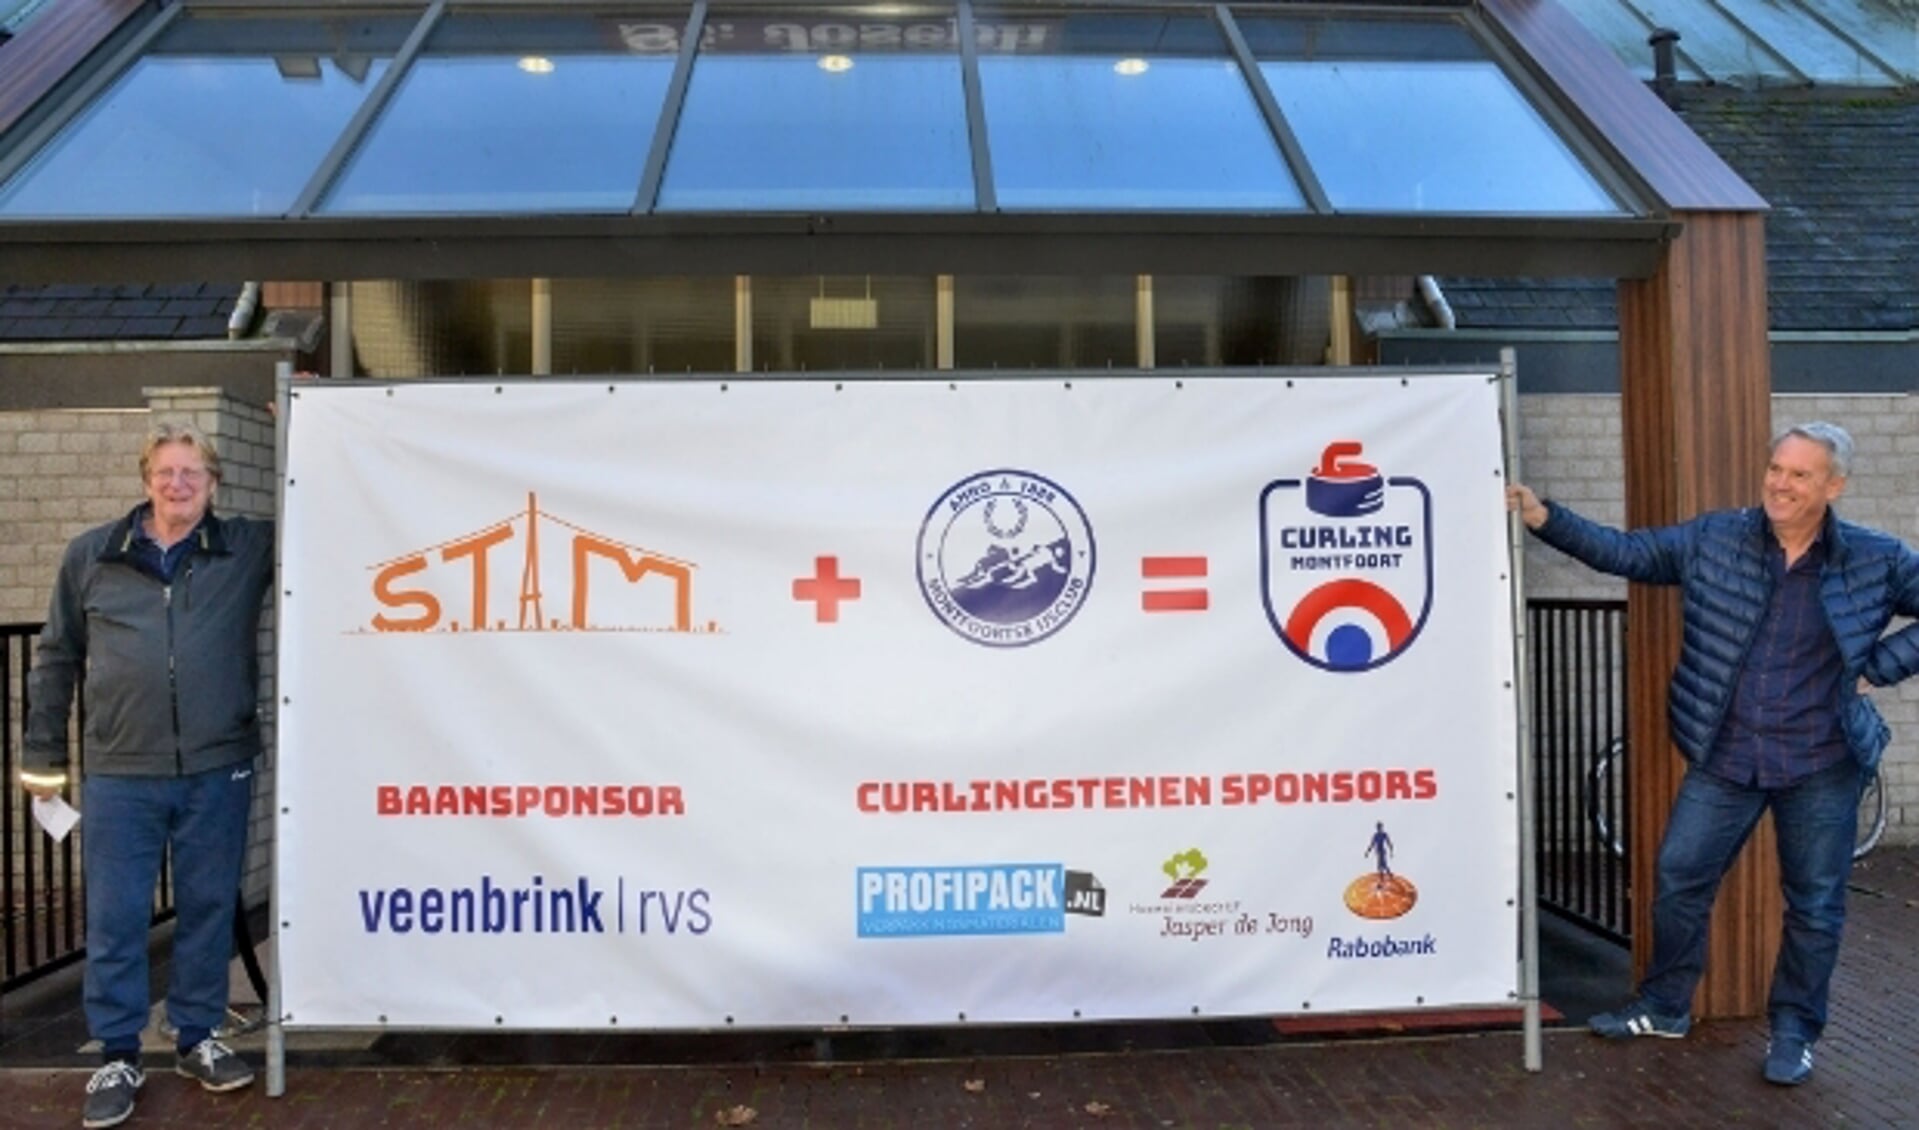 Baansponsor Willem Veenbrink (l) en René Damme van de ijsclub met de banner van Curling Montfoort. (Foto: Paul van den Dungen)